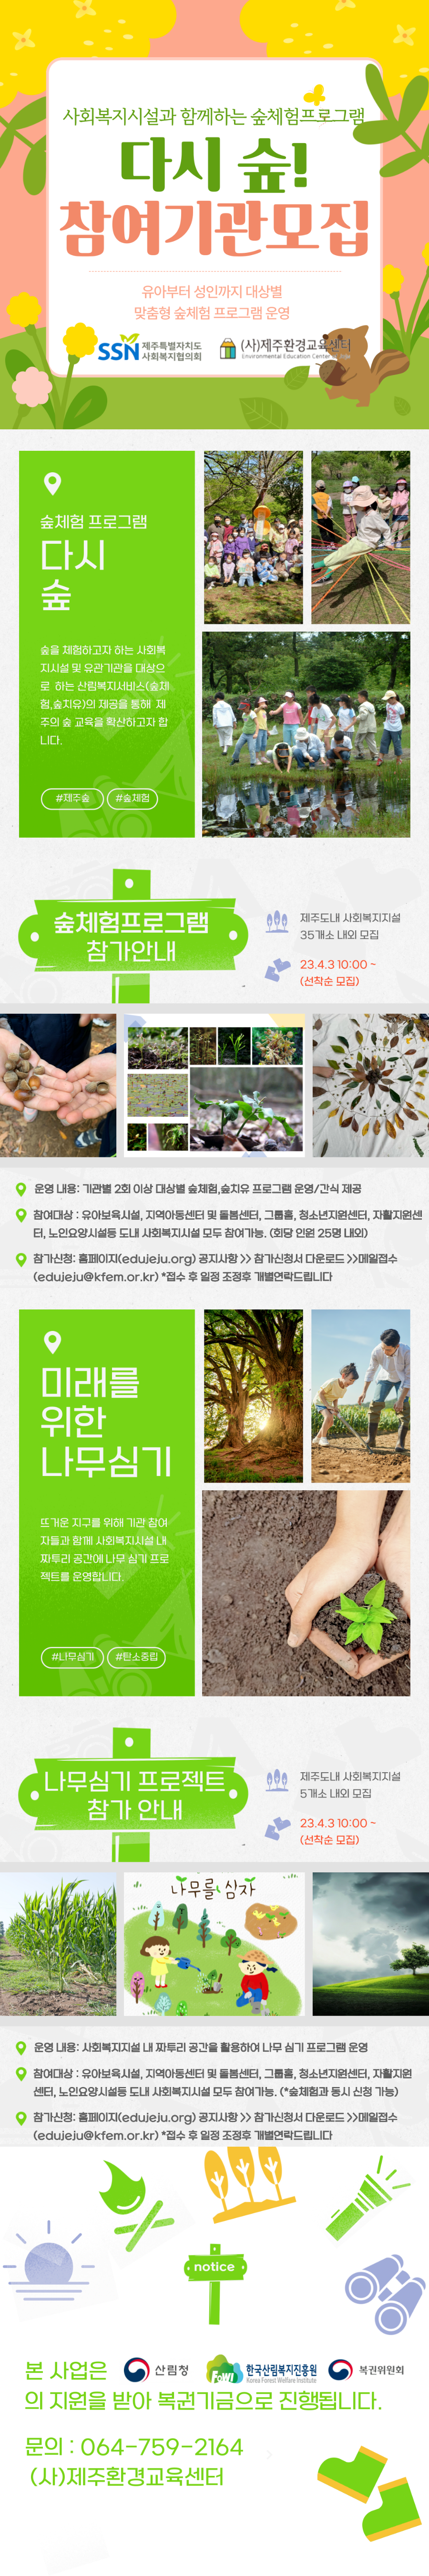 다시숲-카드뉴스(한장으로 만들기).png